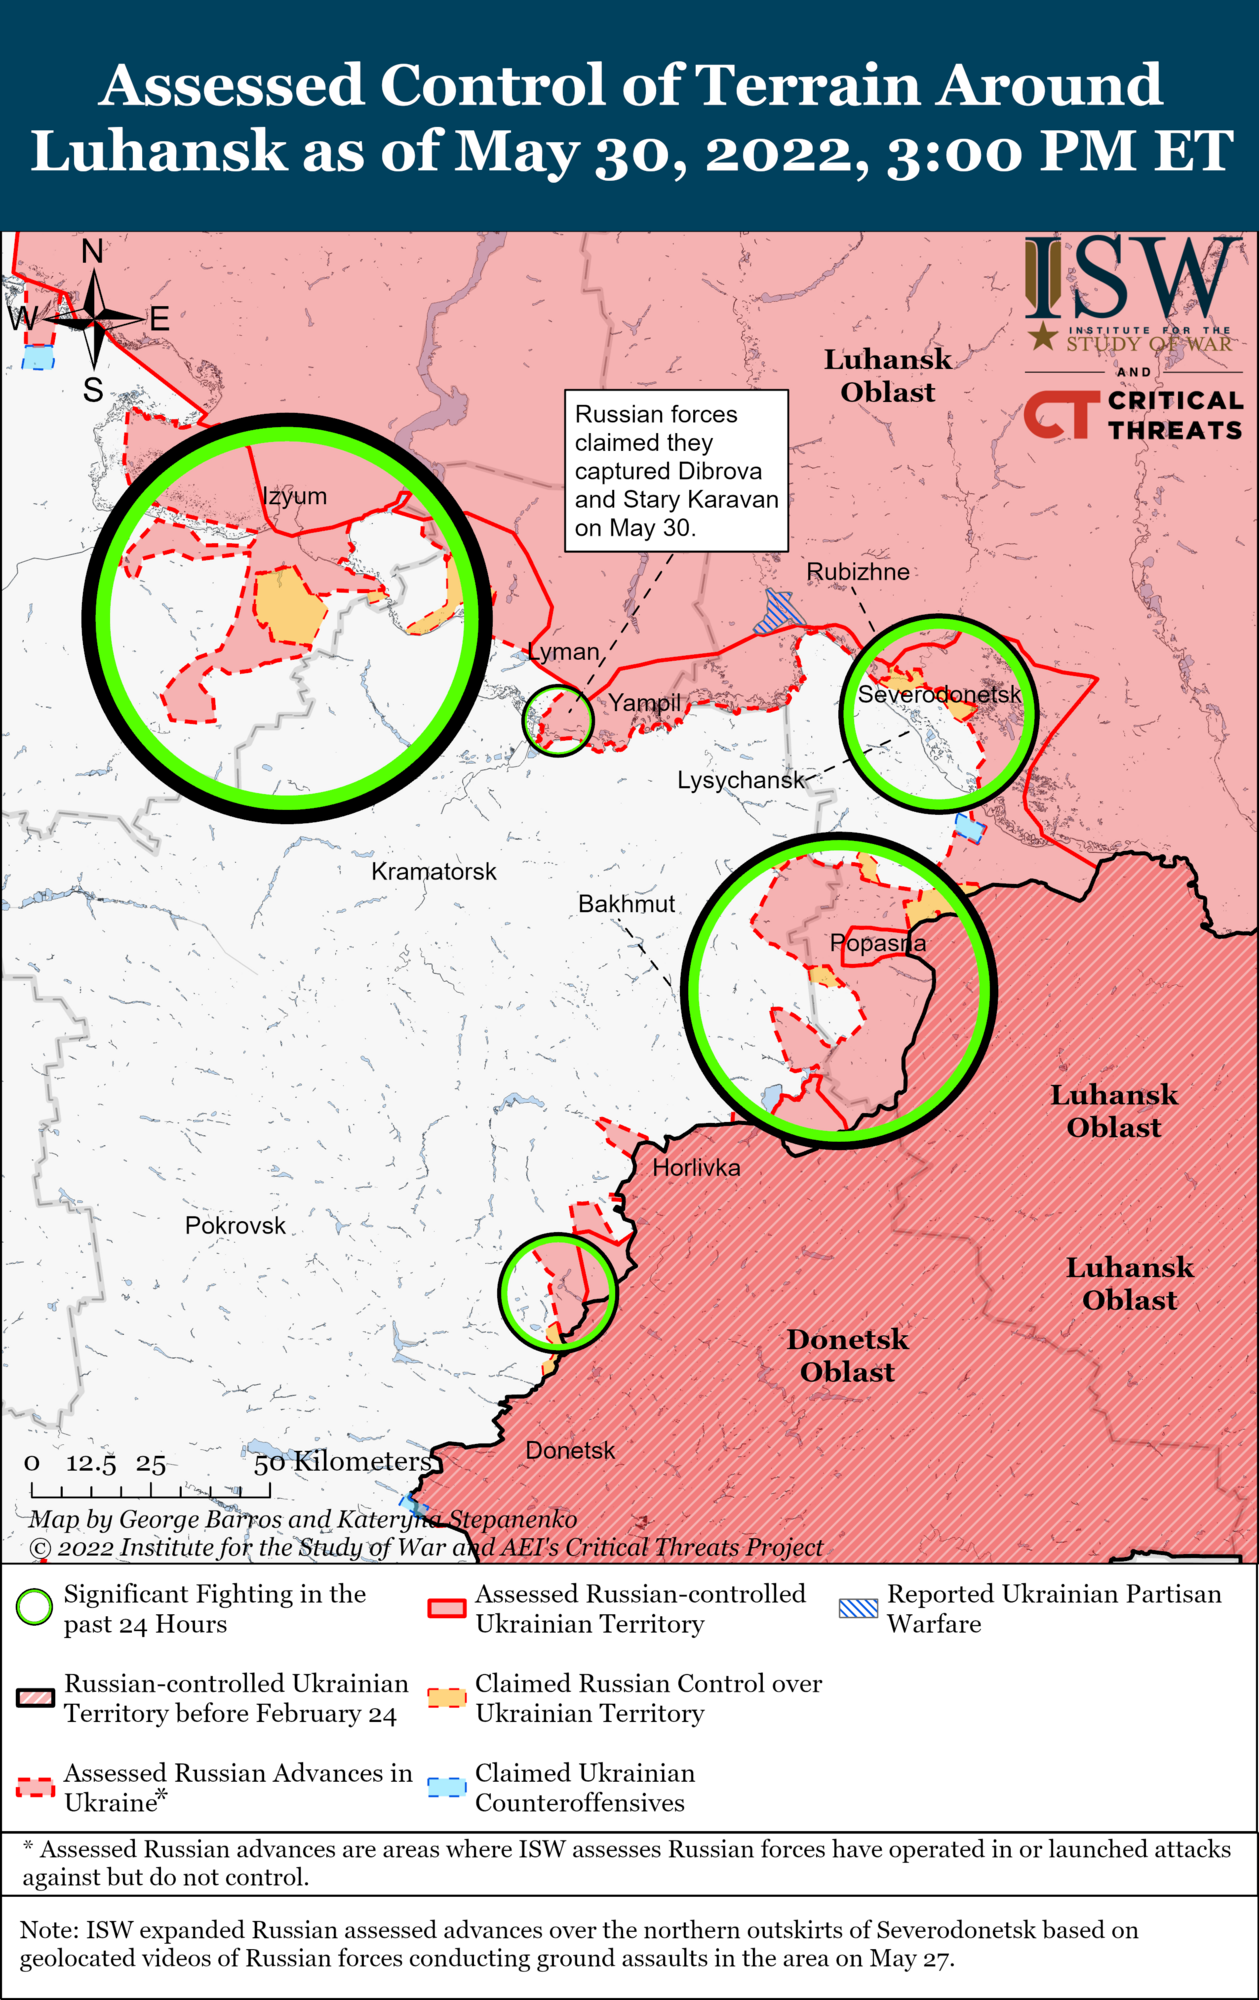 Карта боевых действий на Донбассе